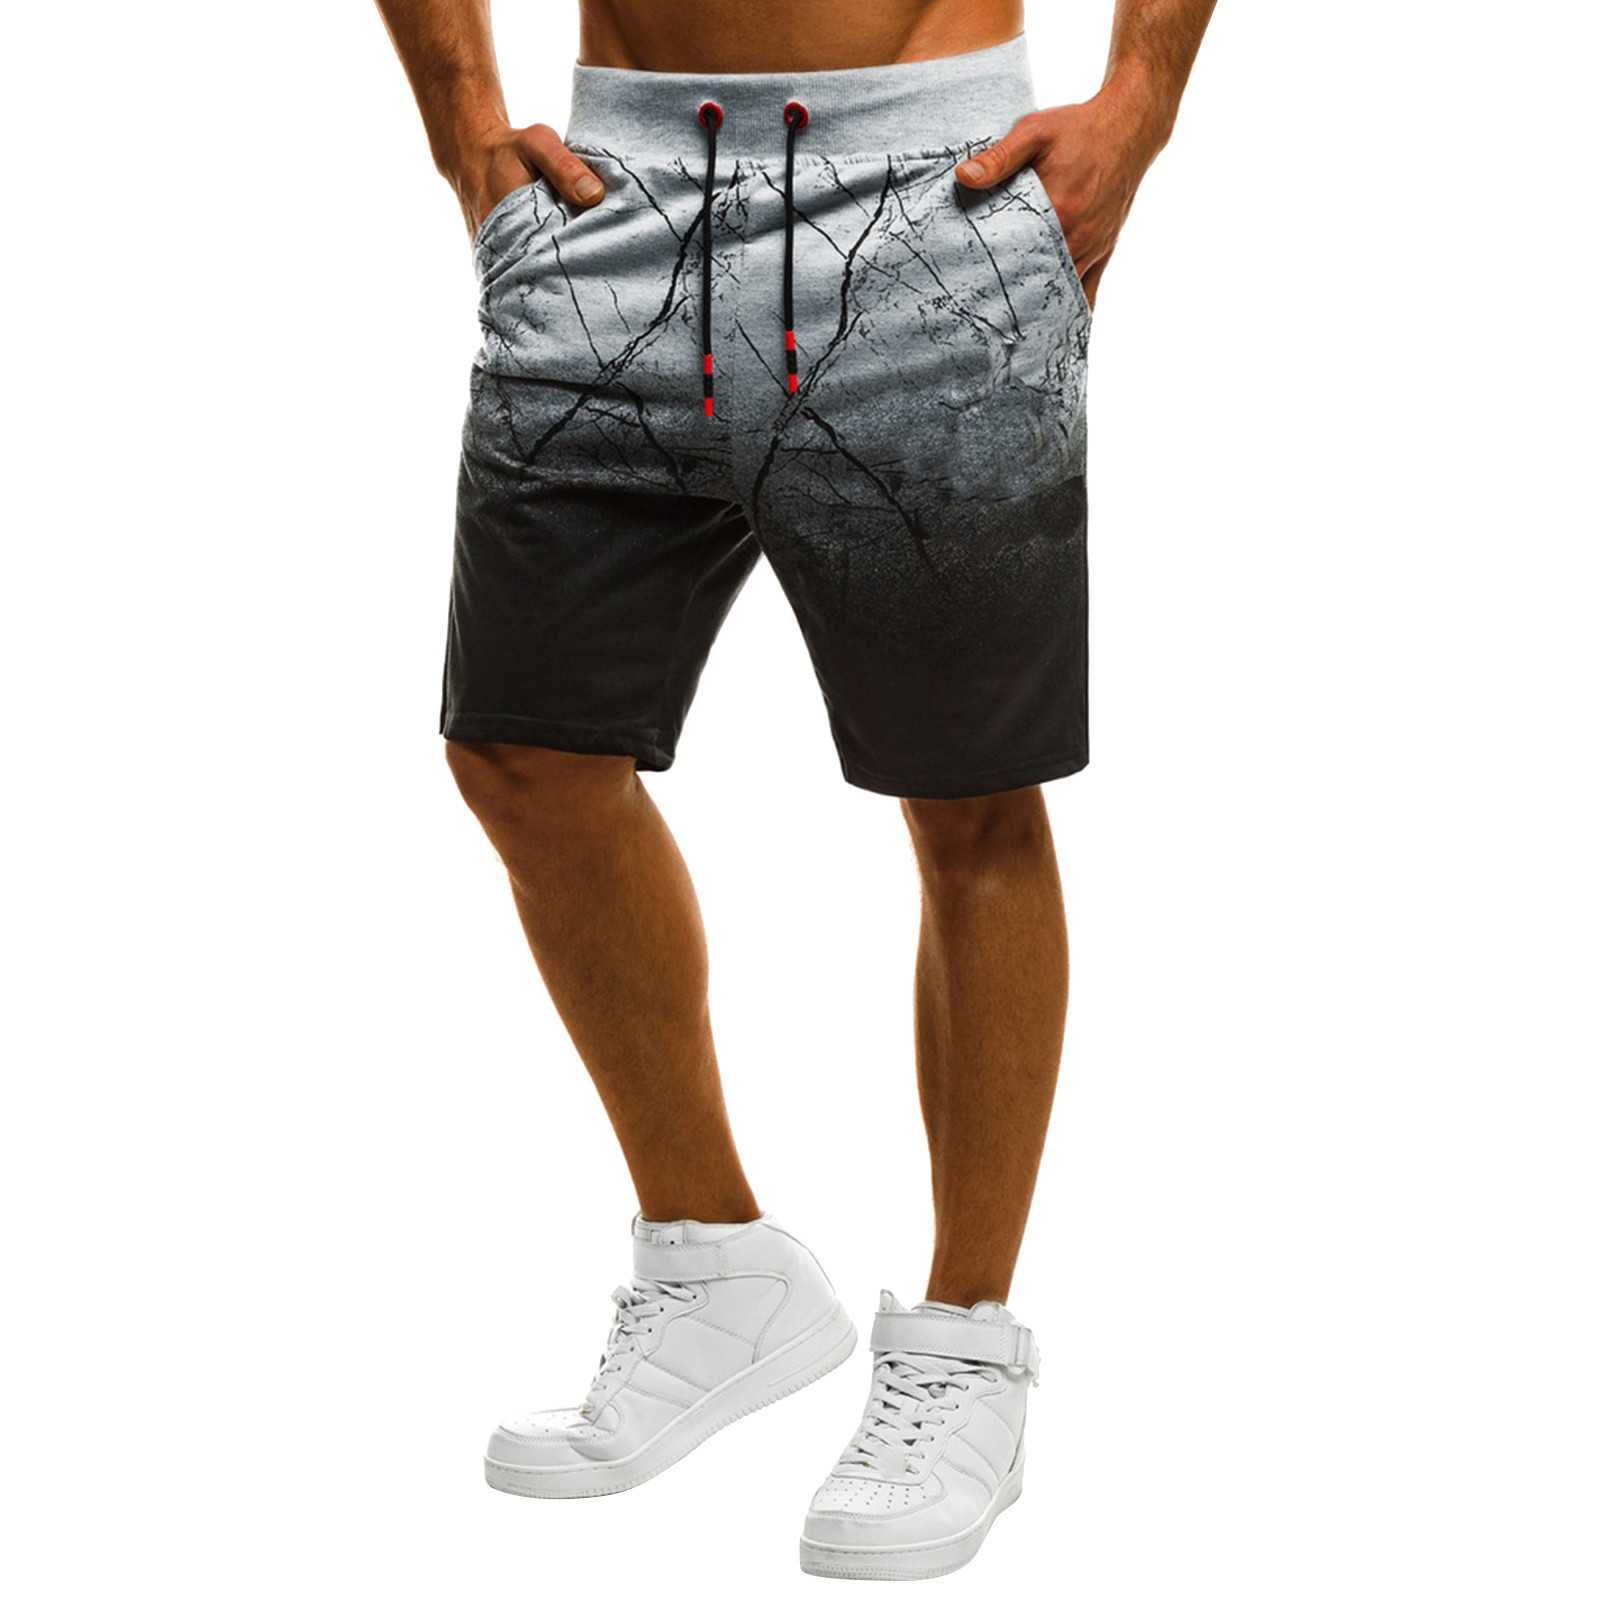 Mäns shorts olinerade löpande shorts herrar sommarbyxor elastiska band slipsar löst fot casual sport som kör rak flickor små tofflor aa230529